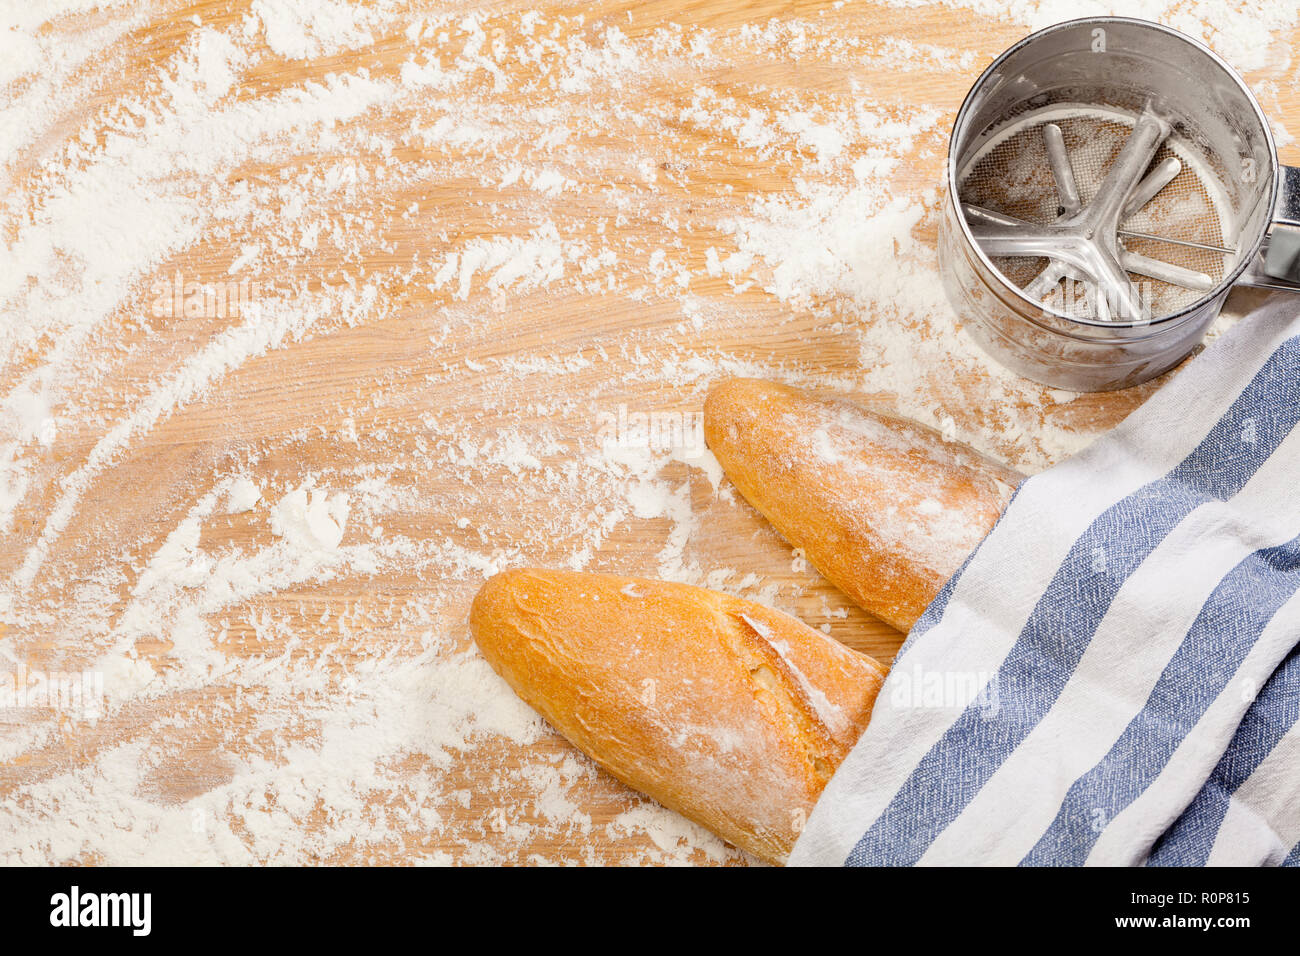 Frisch gebackene handwerklichen Baguettes (französisches Brot) mit Handtuch mit Mehl Sieb oder Sichter auf Holzuntergrund mit Mehl abgedeckt Stockfoto